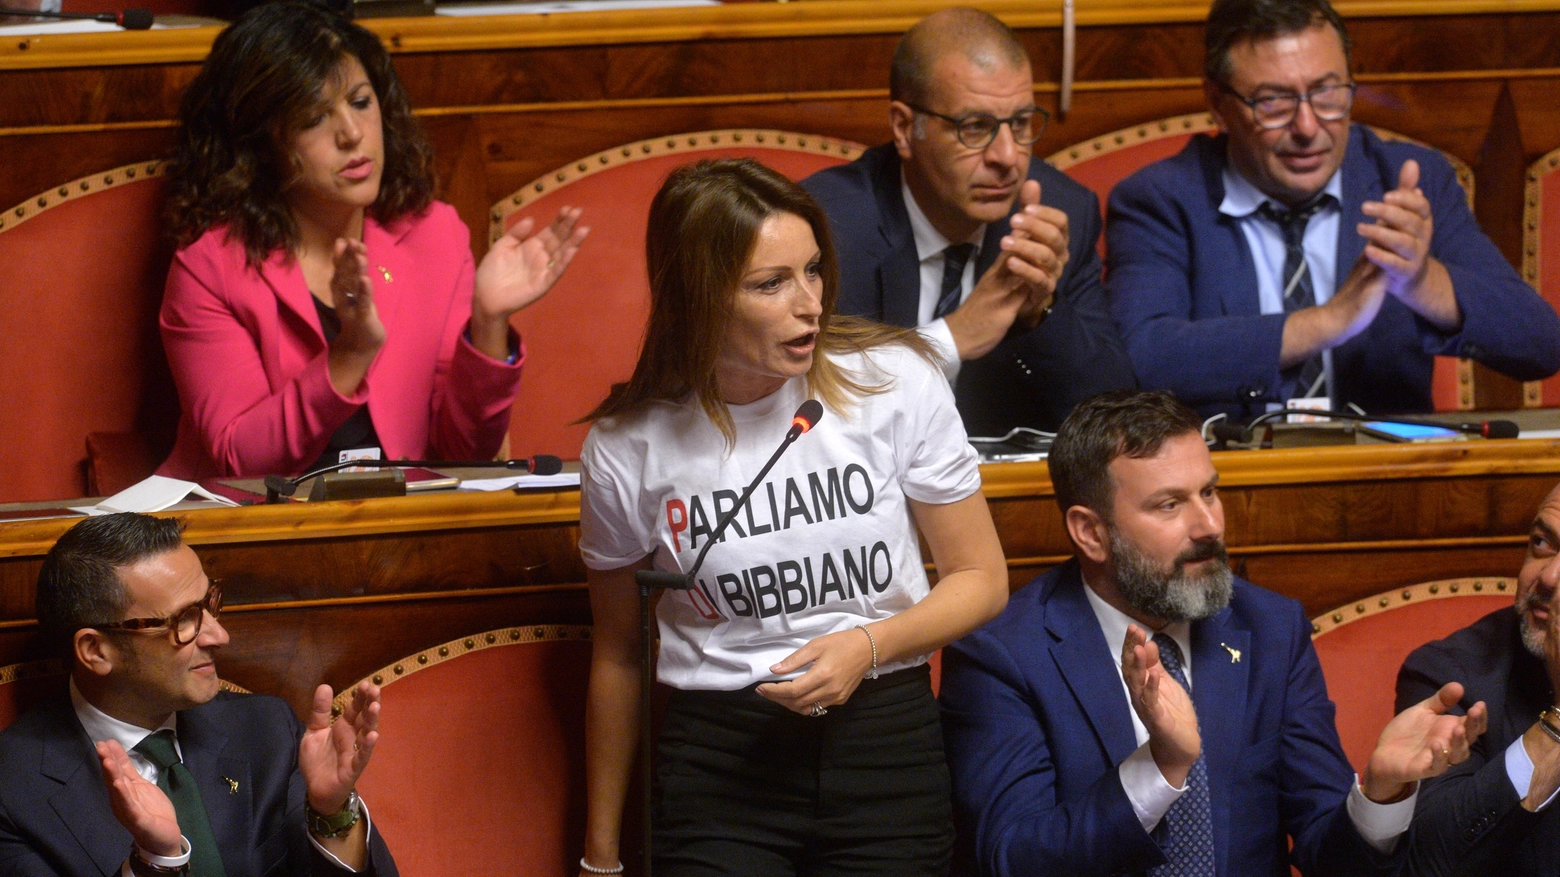 Lucia Borgonzoni in Senato con la t-shirt 'Parliamo di Bibbiano' (ImagoE)